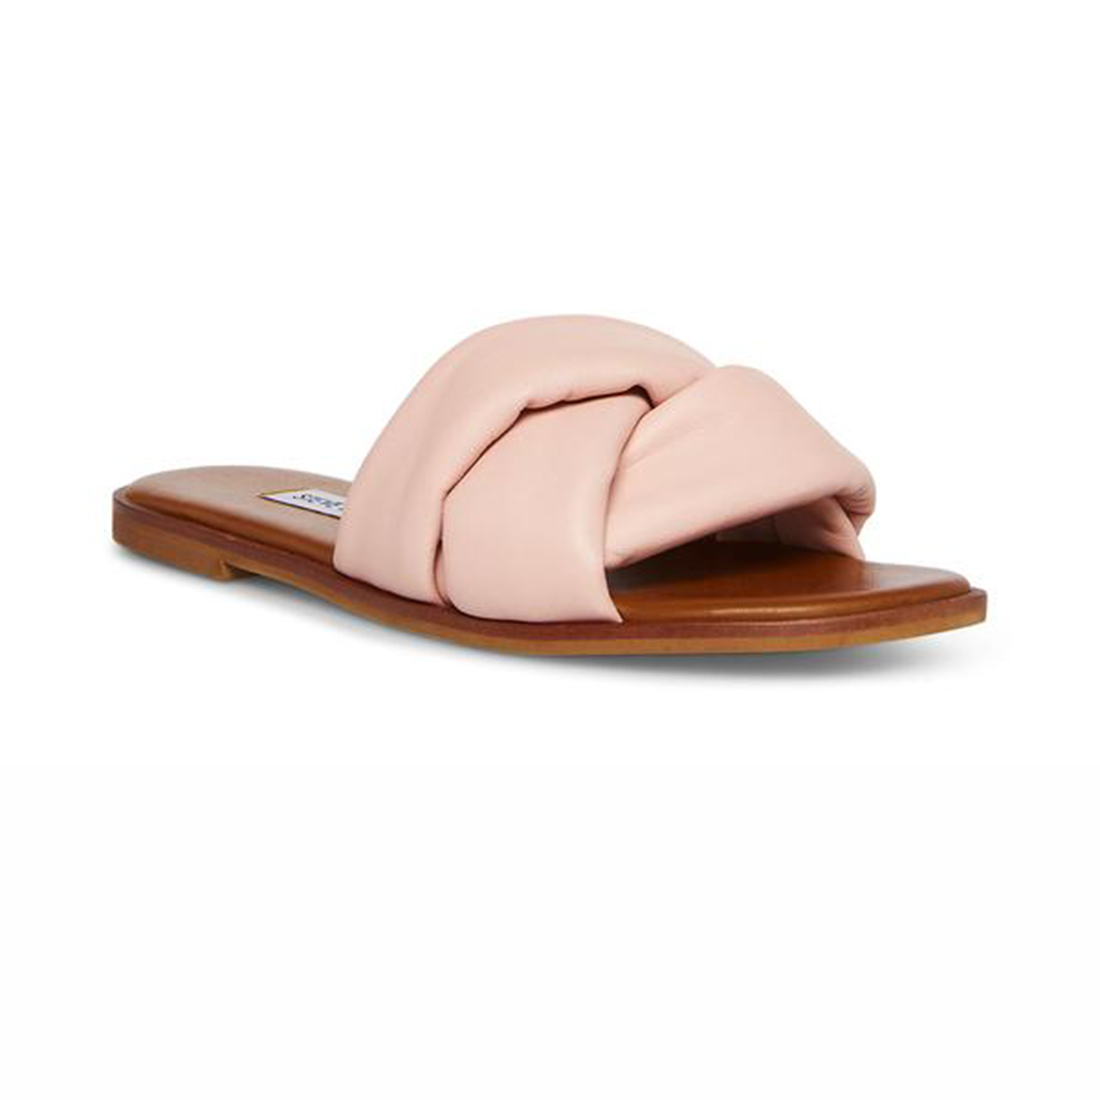 steve madden georgina slide in pink leather 91609